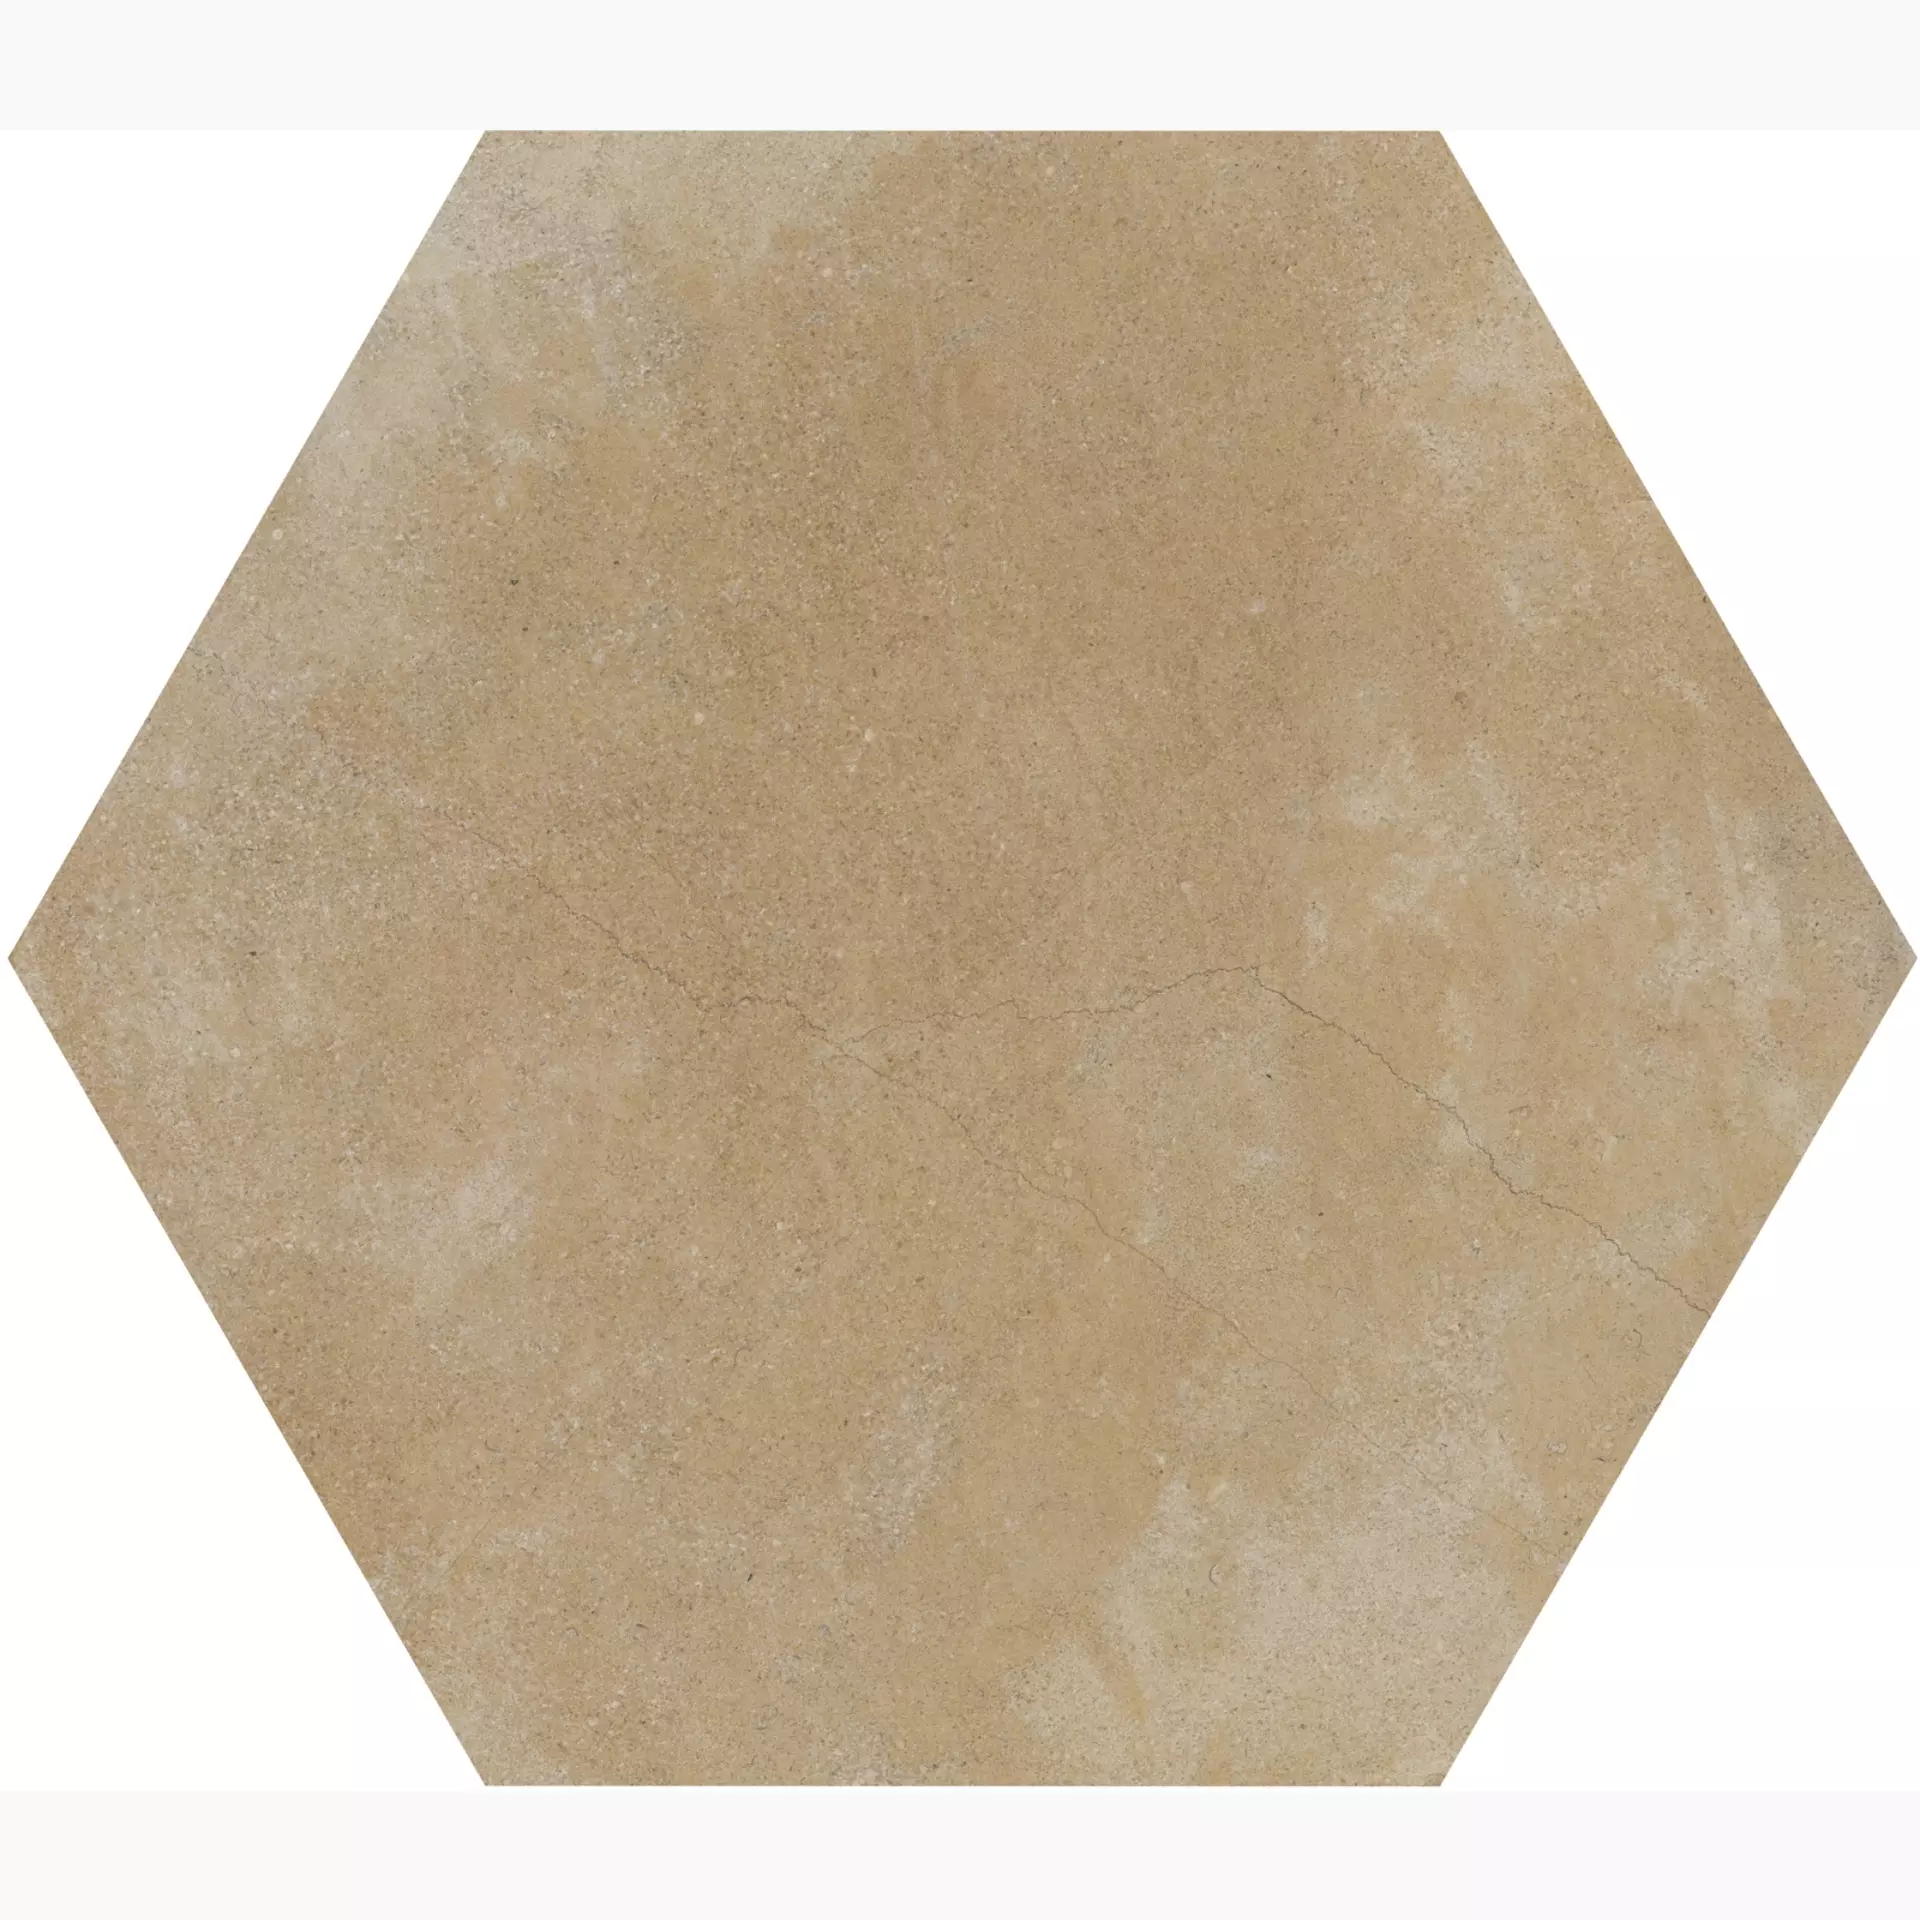 Casalgrande Pietra Bauge Beige Naturale – Matt Hexagon 2246154 30x51,9cm